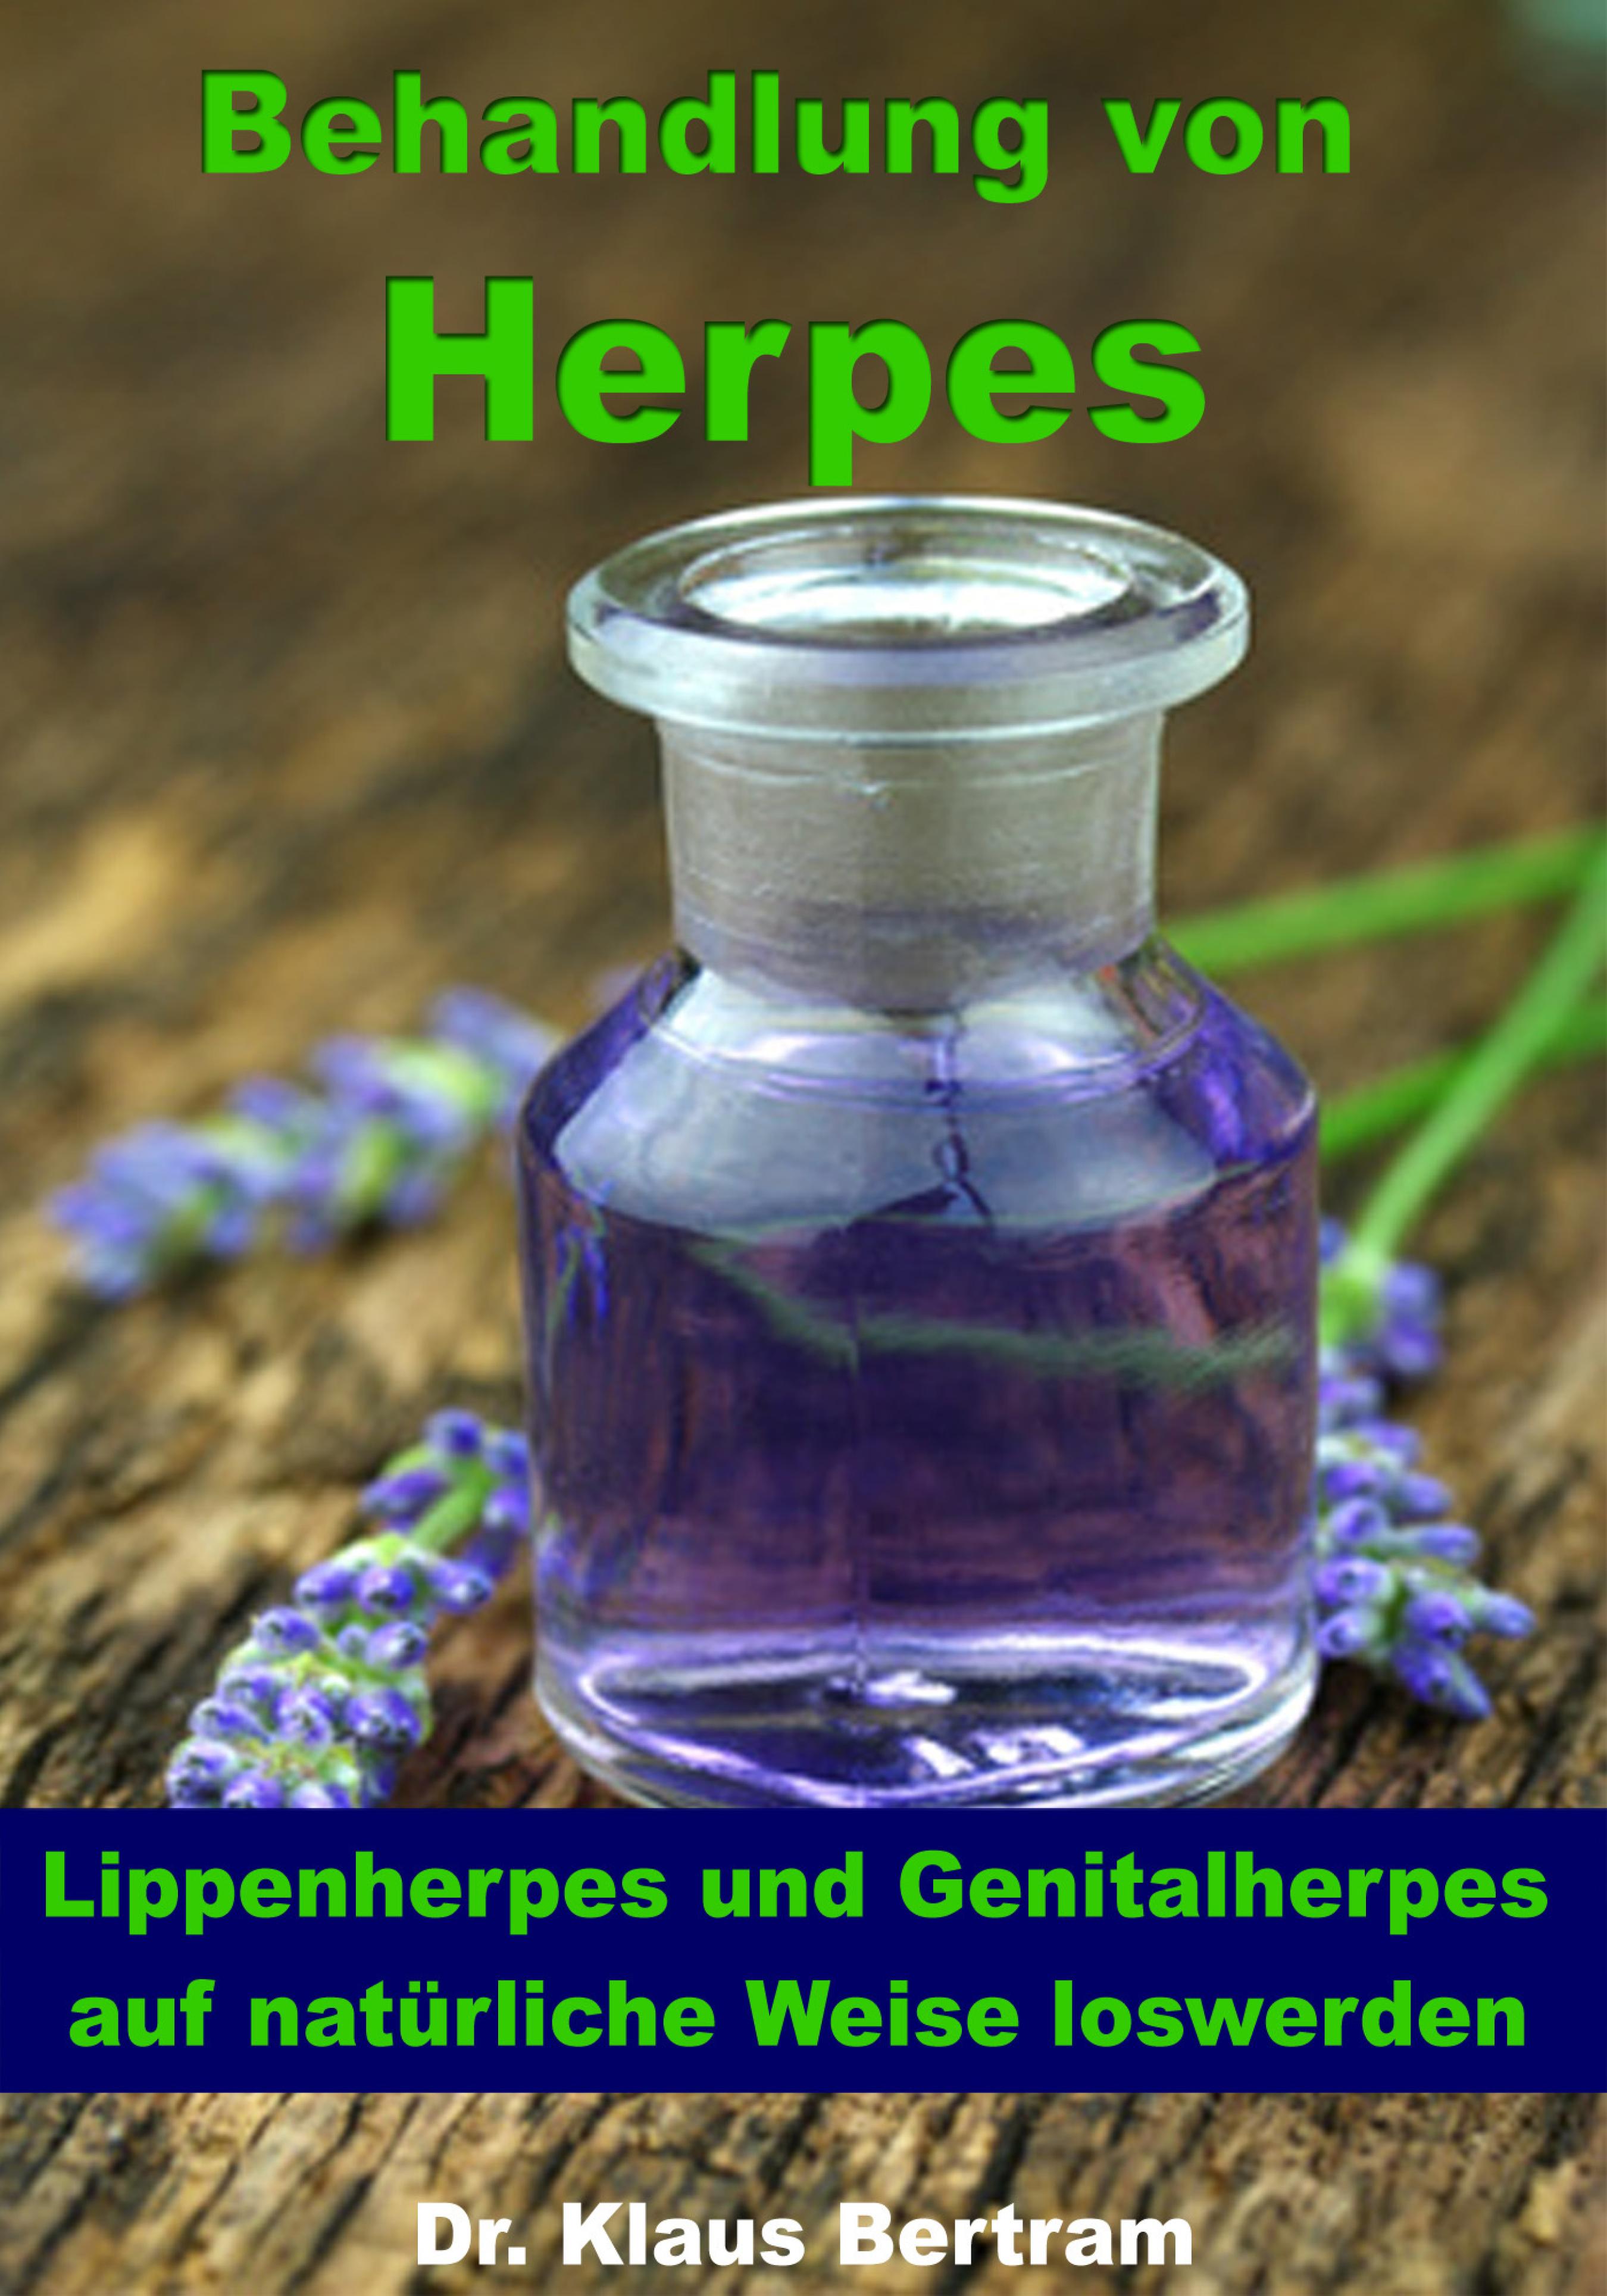 Dr. Klaus Bertram Behandlung von Herpes - Lippenherpes und Genitalherpes auf natürliche Weise loswerden